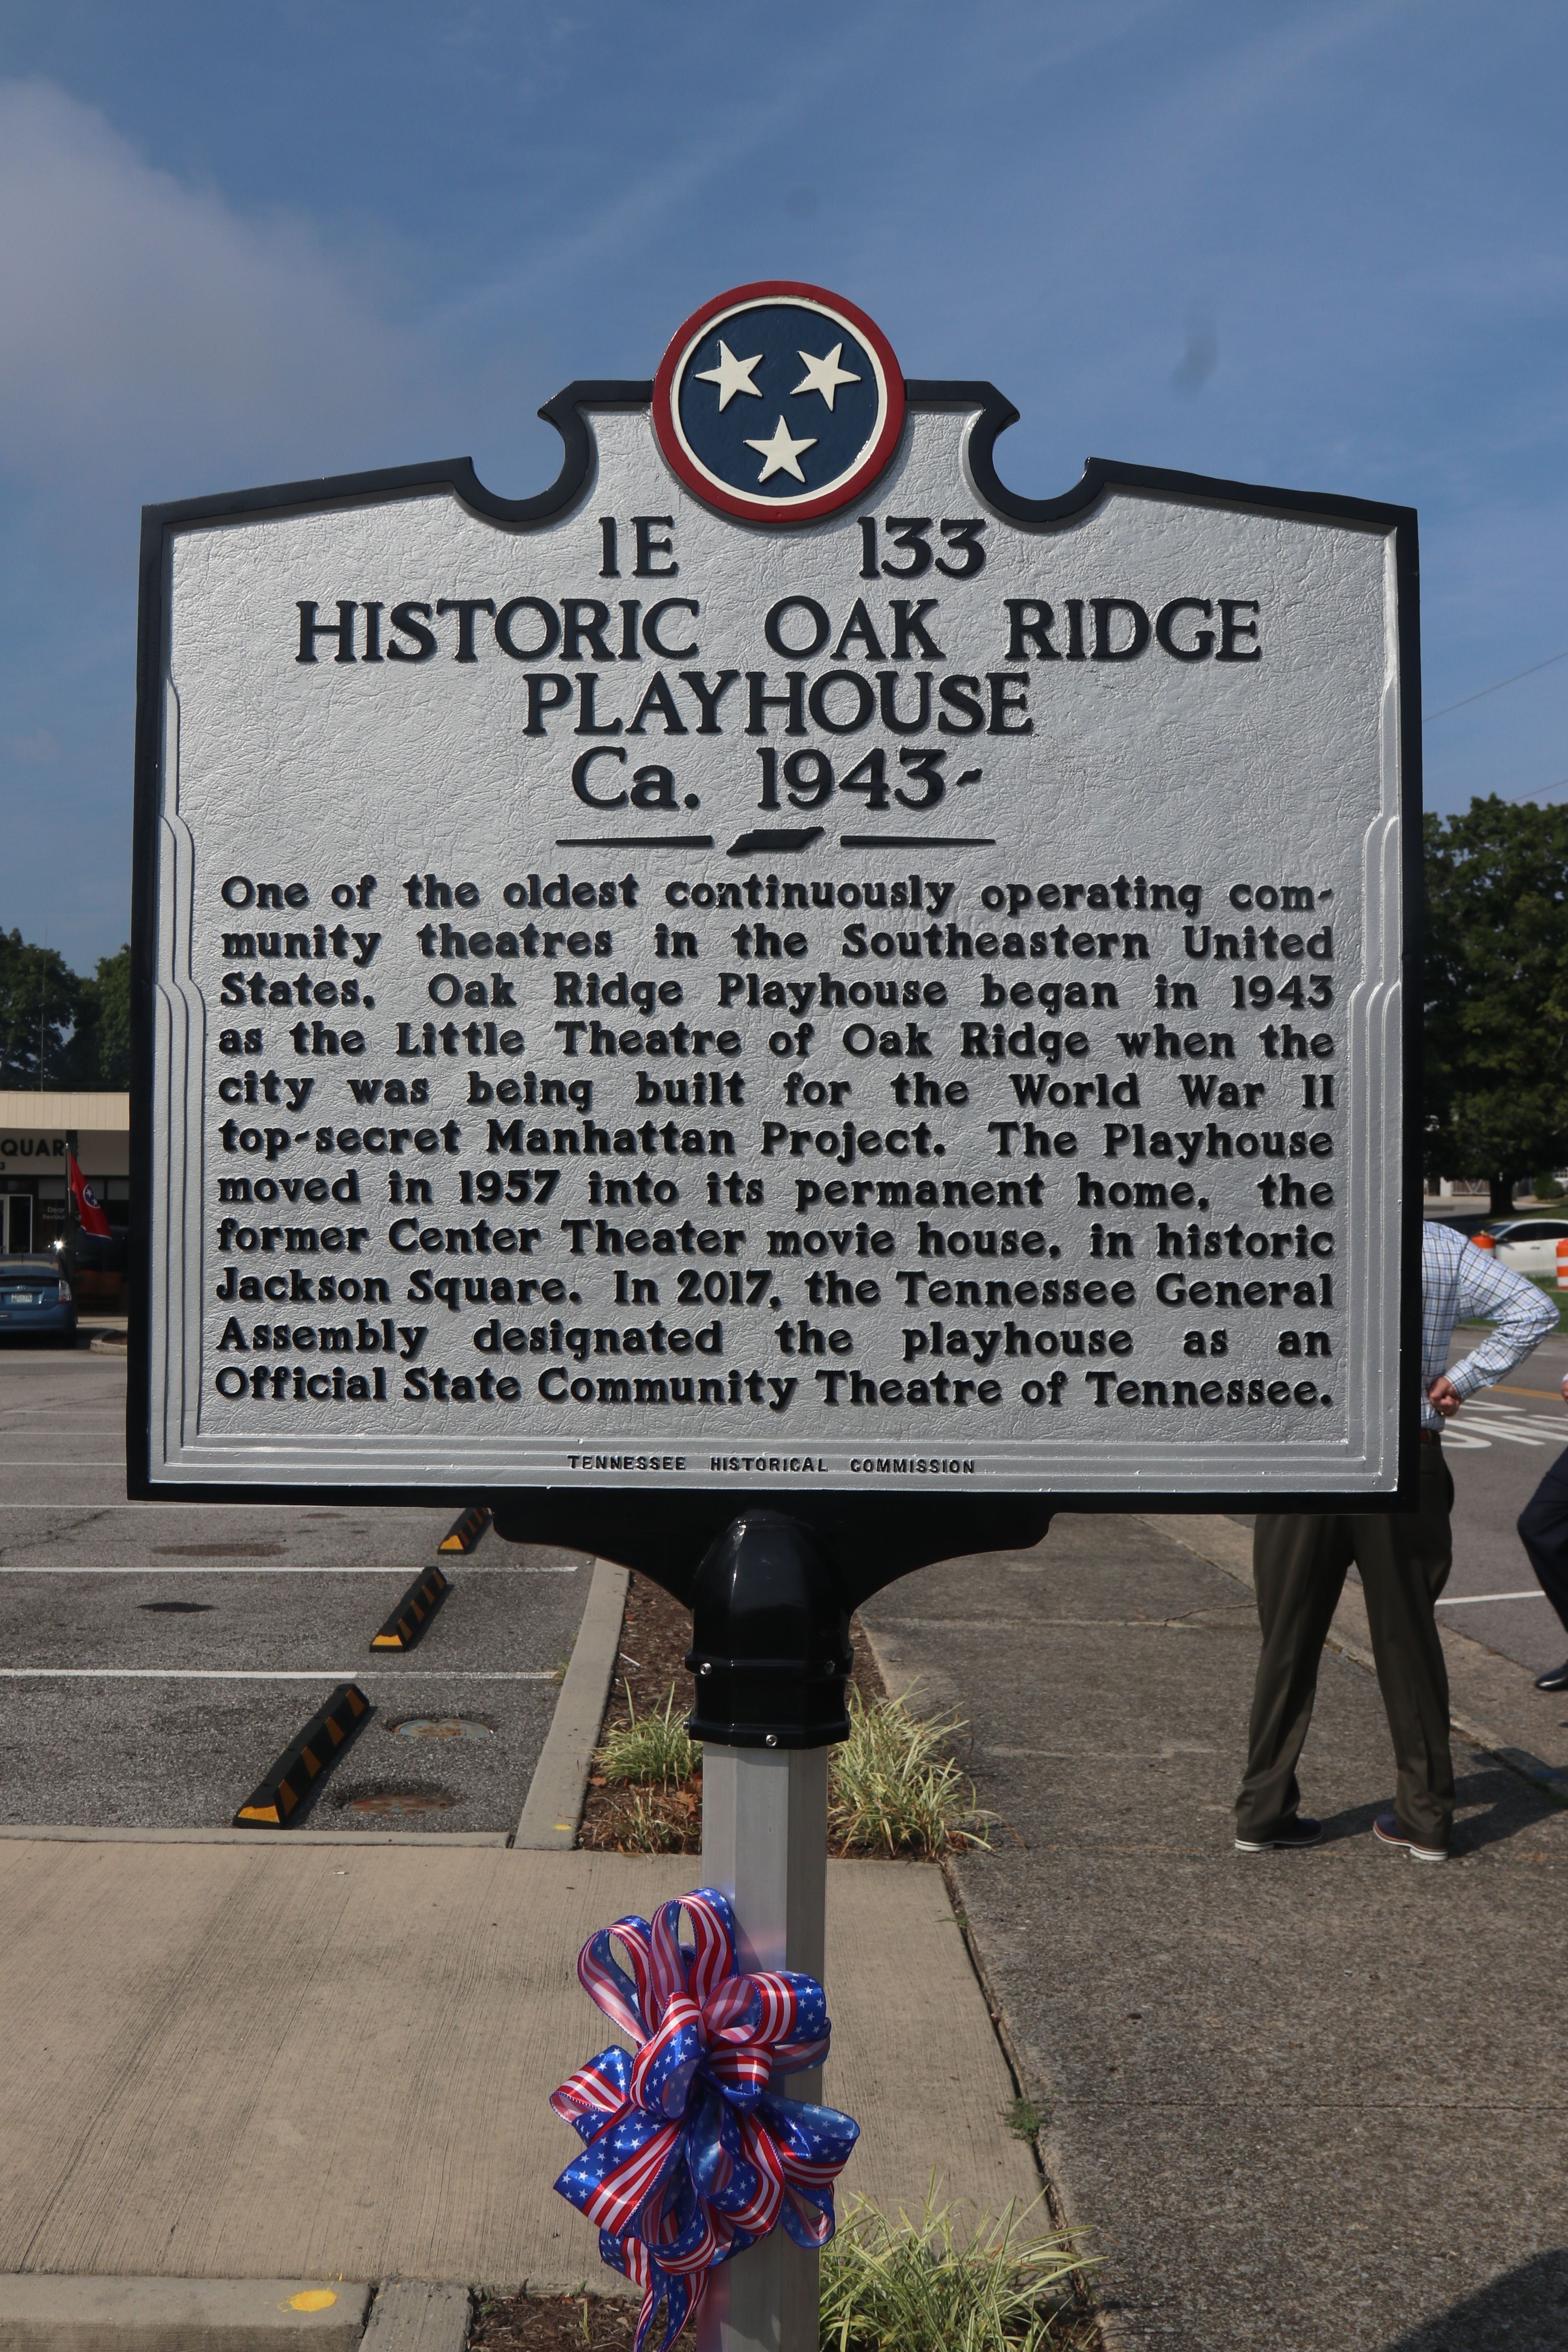 Historic Oak Ridge Playhouse Ca. 1943 - Marker